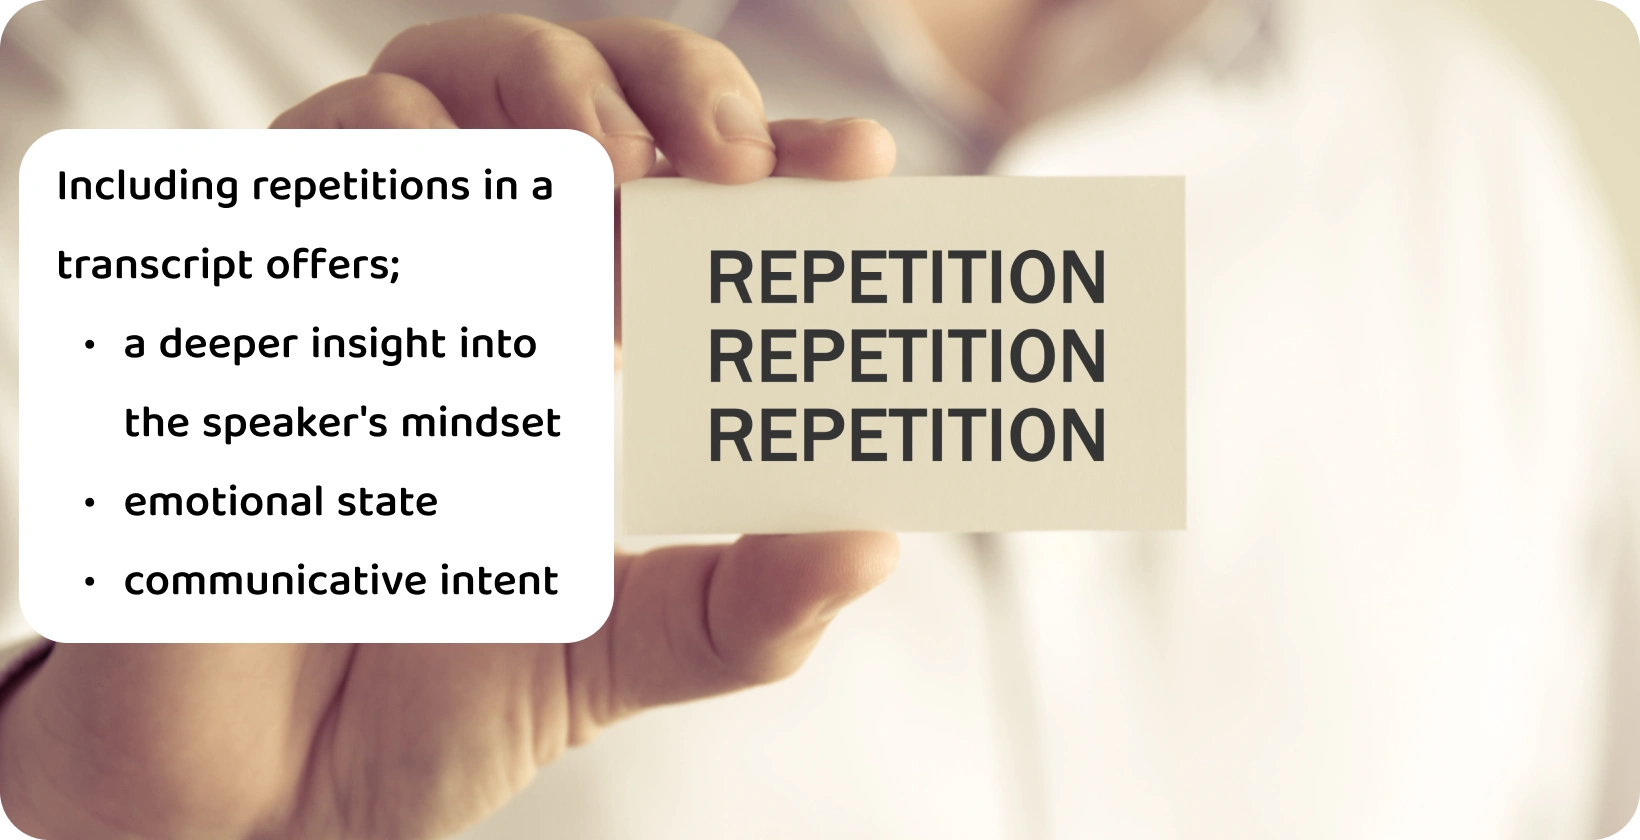 Un prim-plan al unei mâini care ține un cartonaș cu cuvântul "Repetiție", ilustrând conceptul de repetări într-o transcriere verbatim.